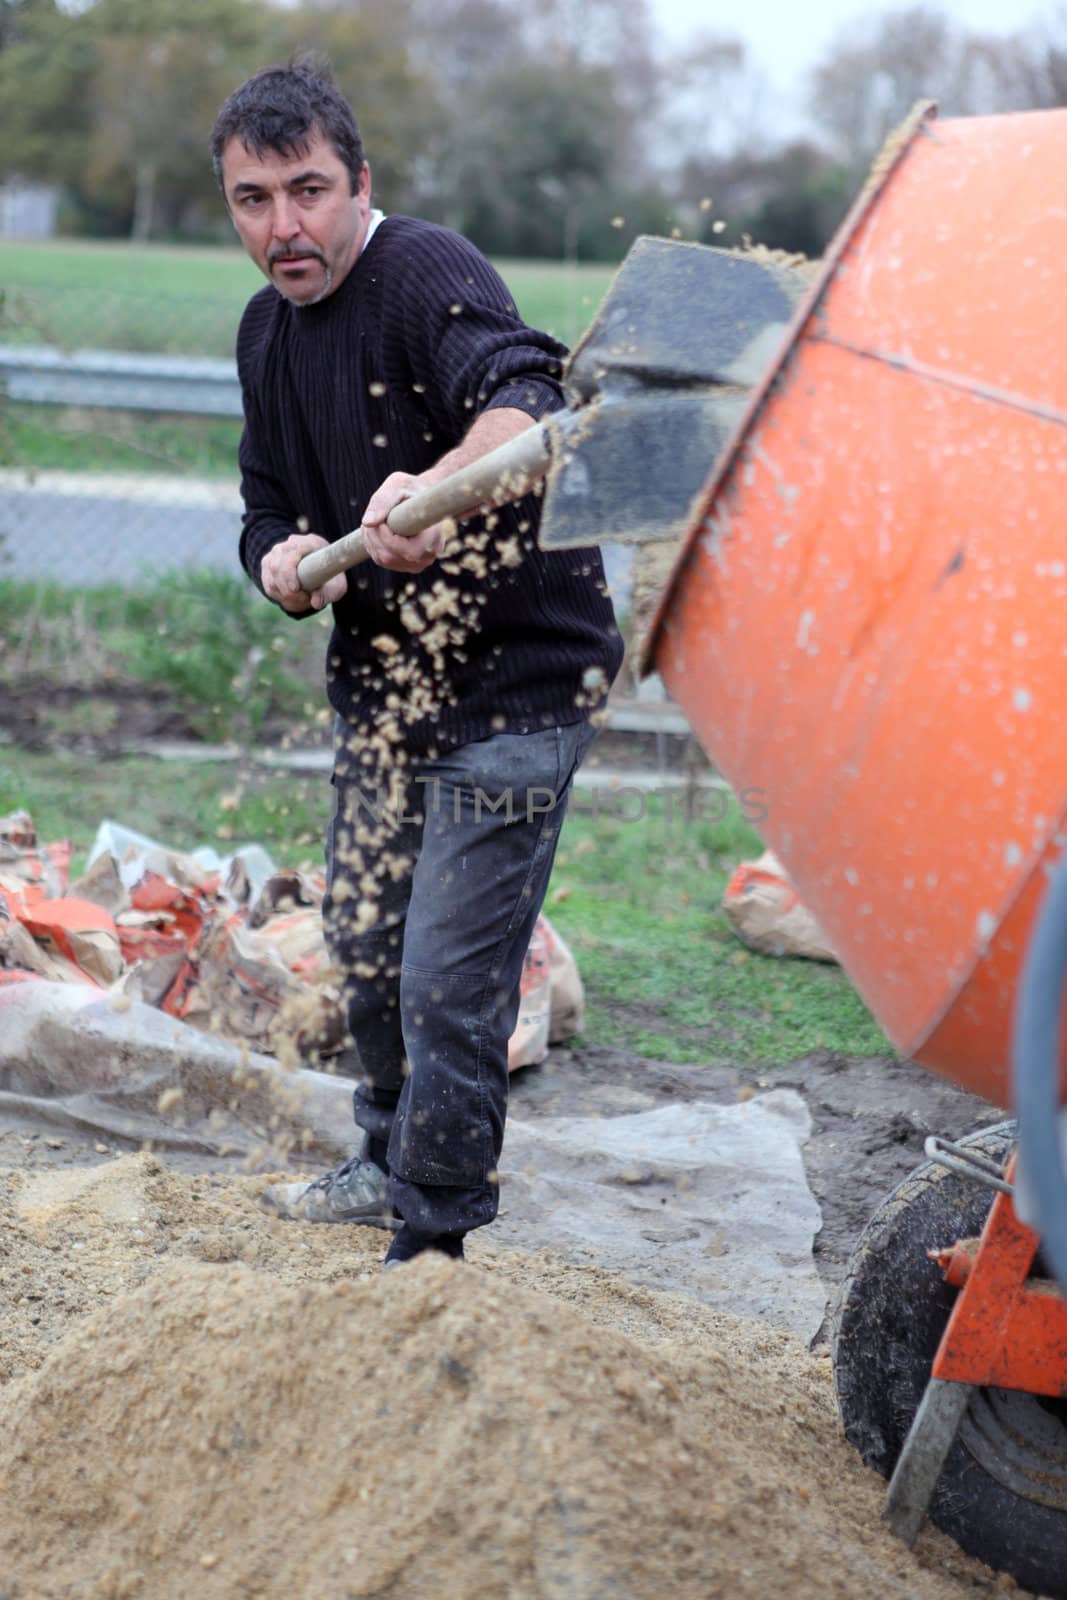 Labourer shovelling gravel into a mixer